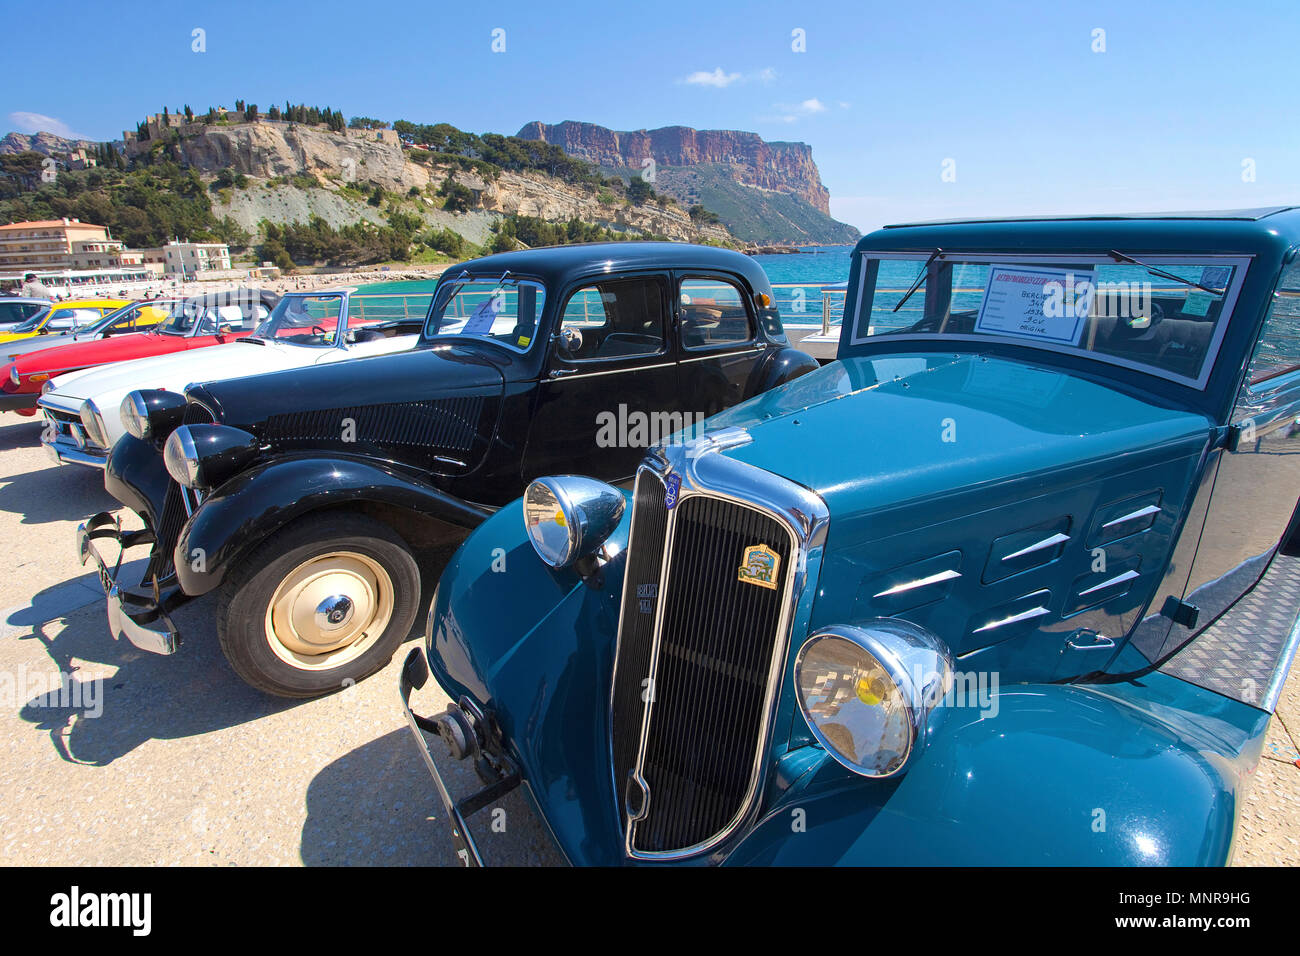 Klassische Autos am Hafen von Cassis, Bouches-du-Rhône der Region Provence-Alpes-Côte d'Azur, Südfrankreich, Frankreich, Europa Stockfoto